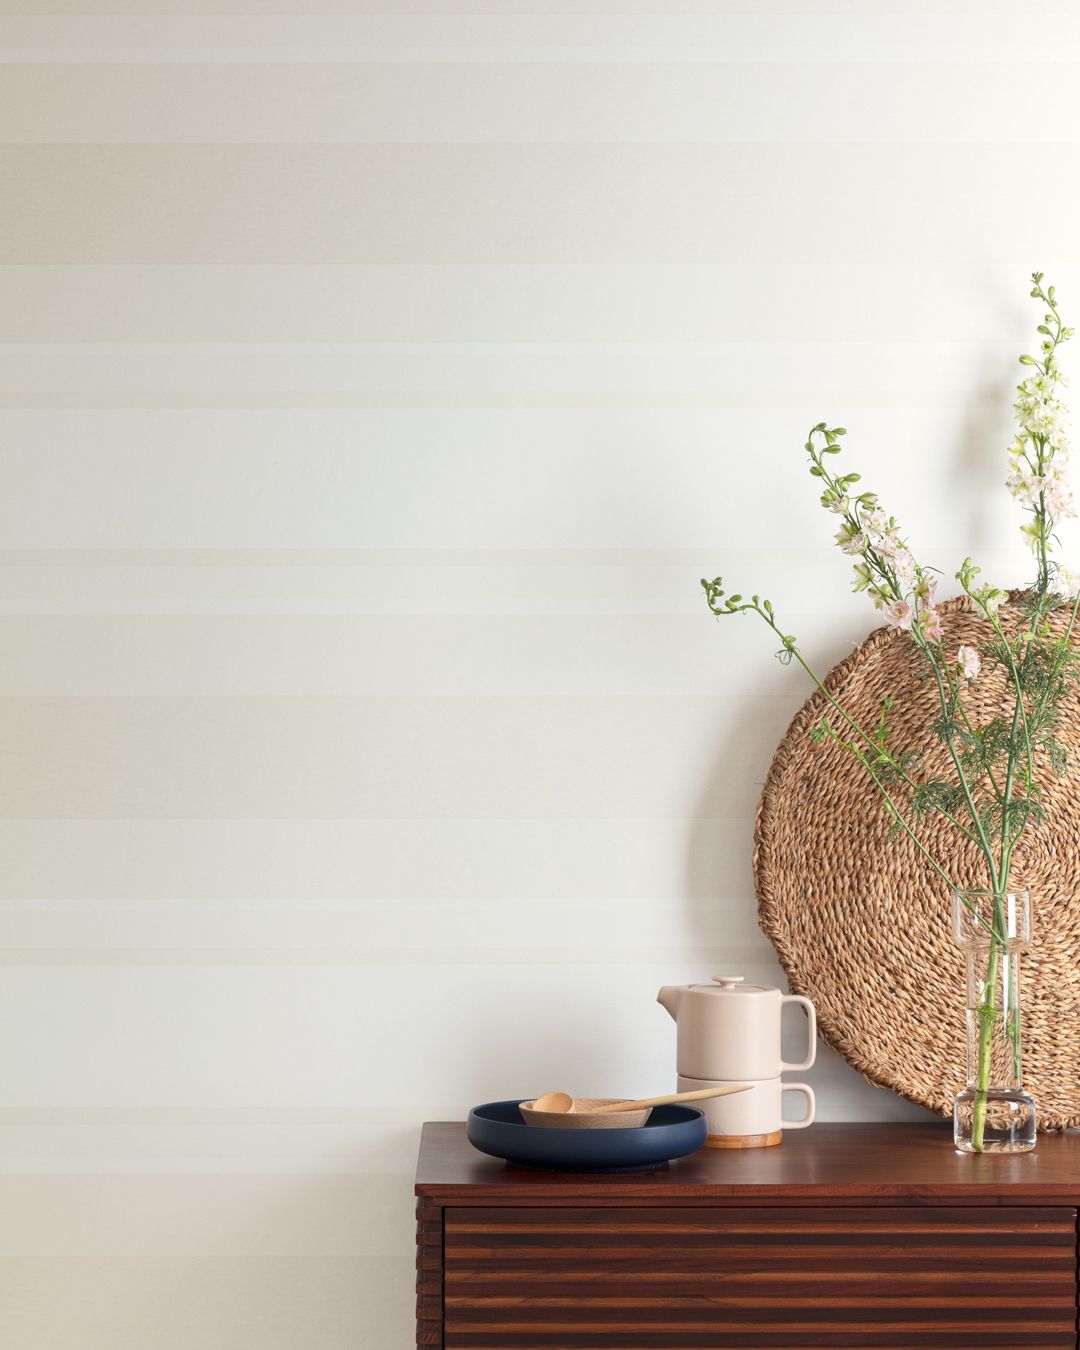 Ljus beige horisontell randig tapet med en försiktig nyansskillnad med sideboard fyllt av porslin och grön kvist